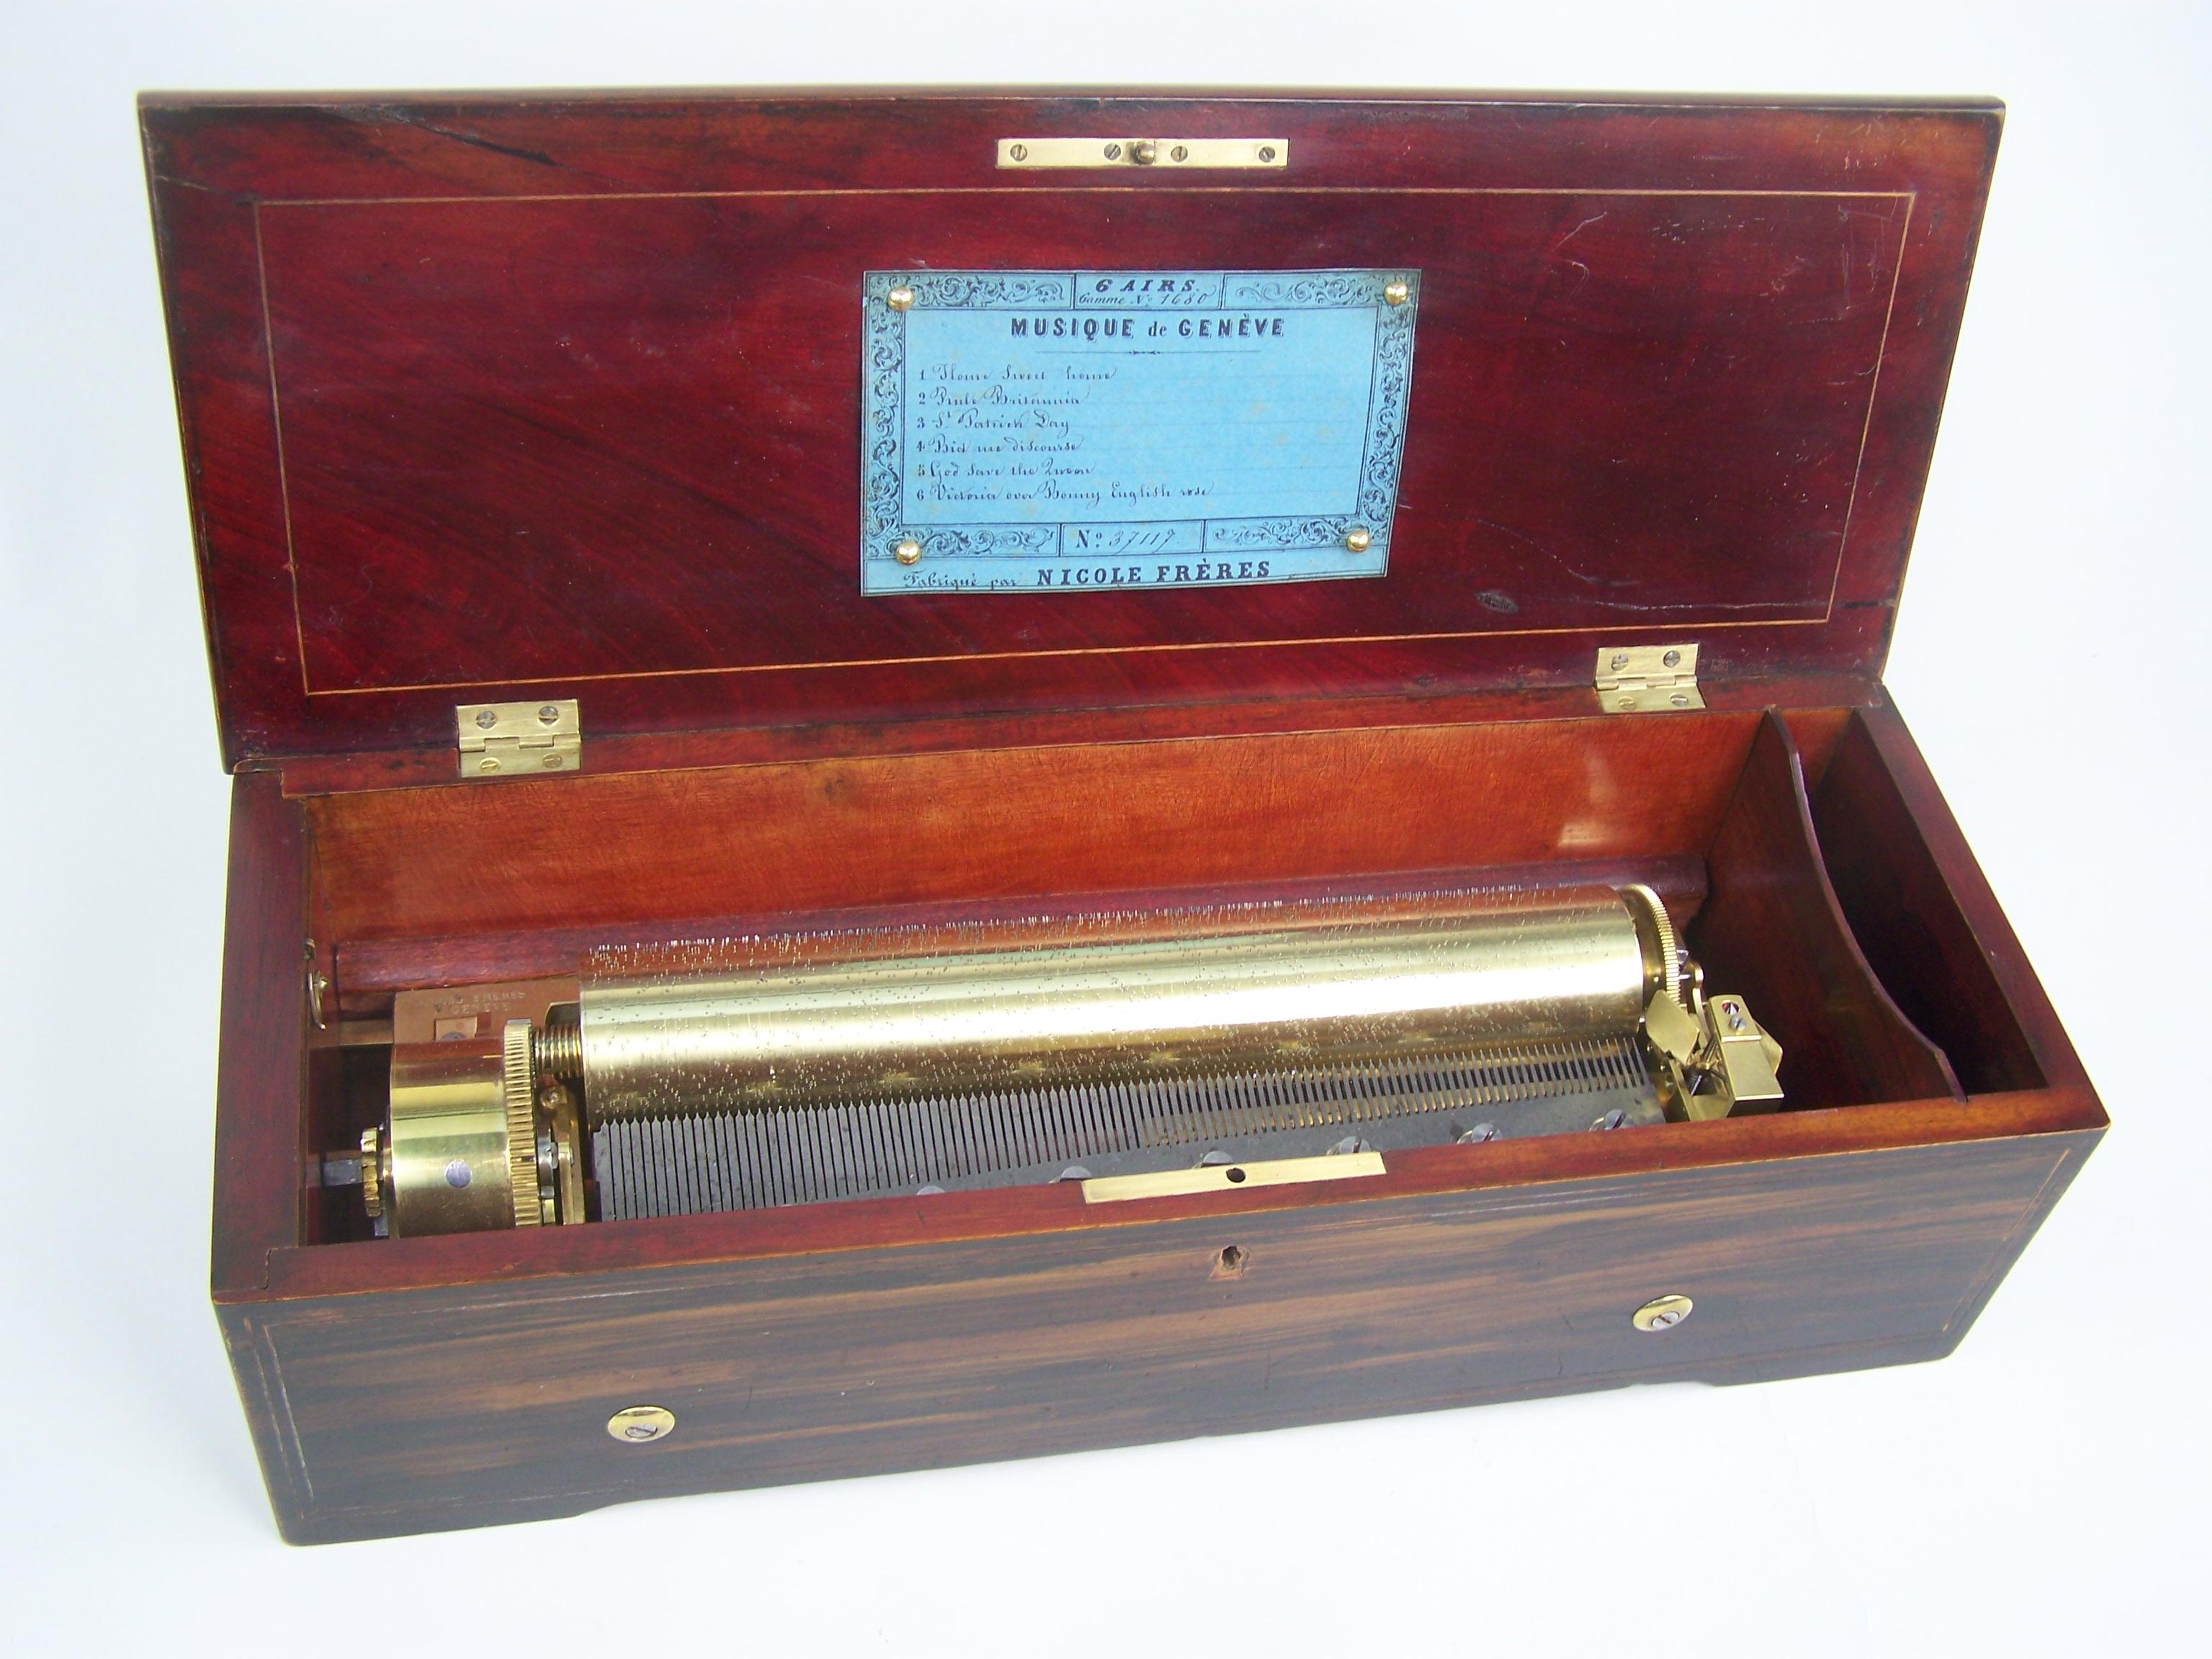 Eine Nicole Freres Spieldose, die in den Originalzustand zurückversetzt wurde.
Diese Spieldose aus dem Jahr 1859 spielt 6 Melodien, wie auf dem Original-Stimmzettel angegeben. 
Die Casa hat eine schöne Einlage auf der Oberseite des Deckels und ist